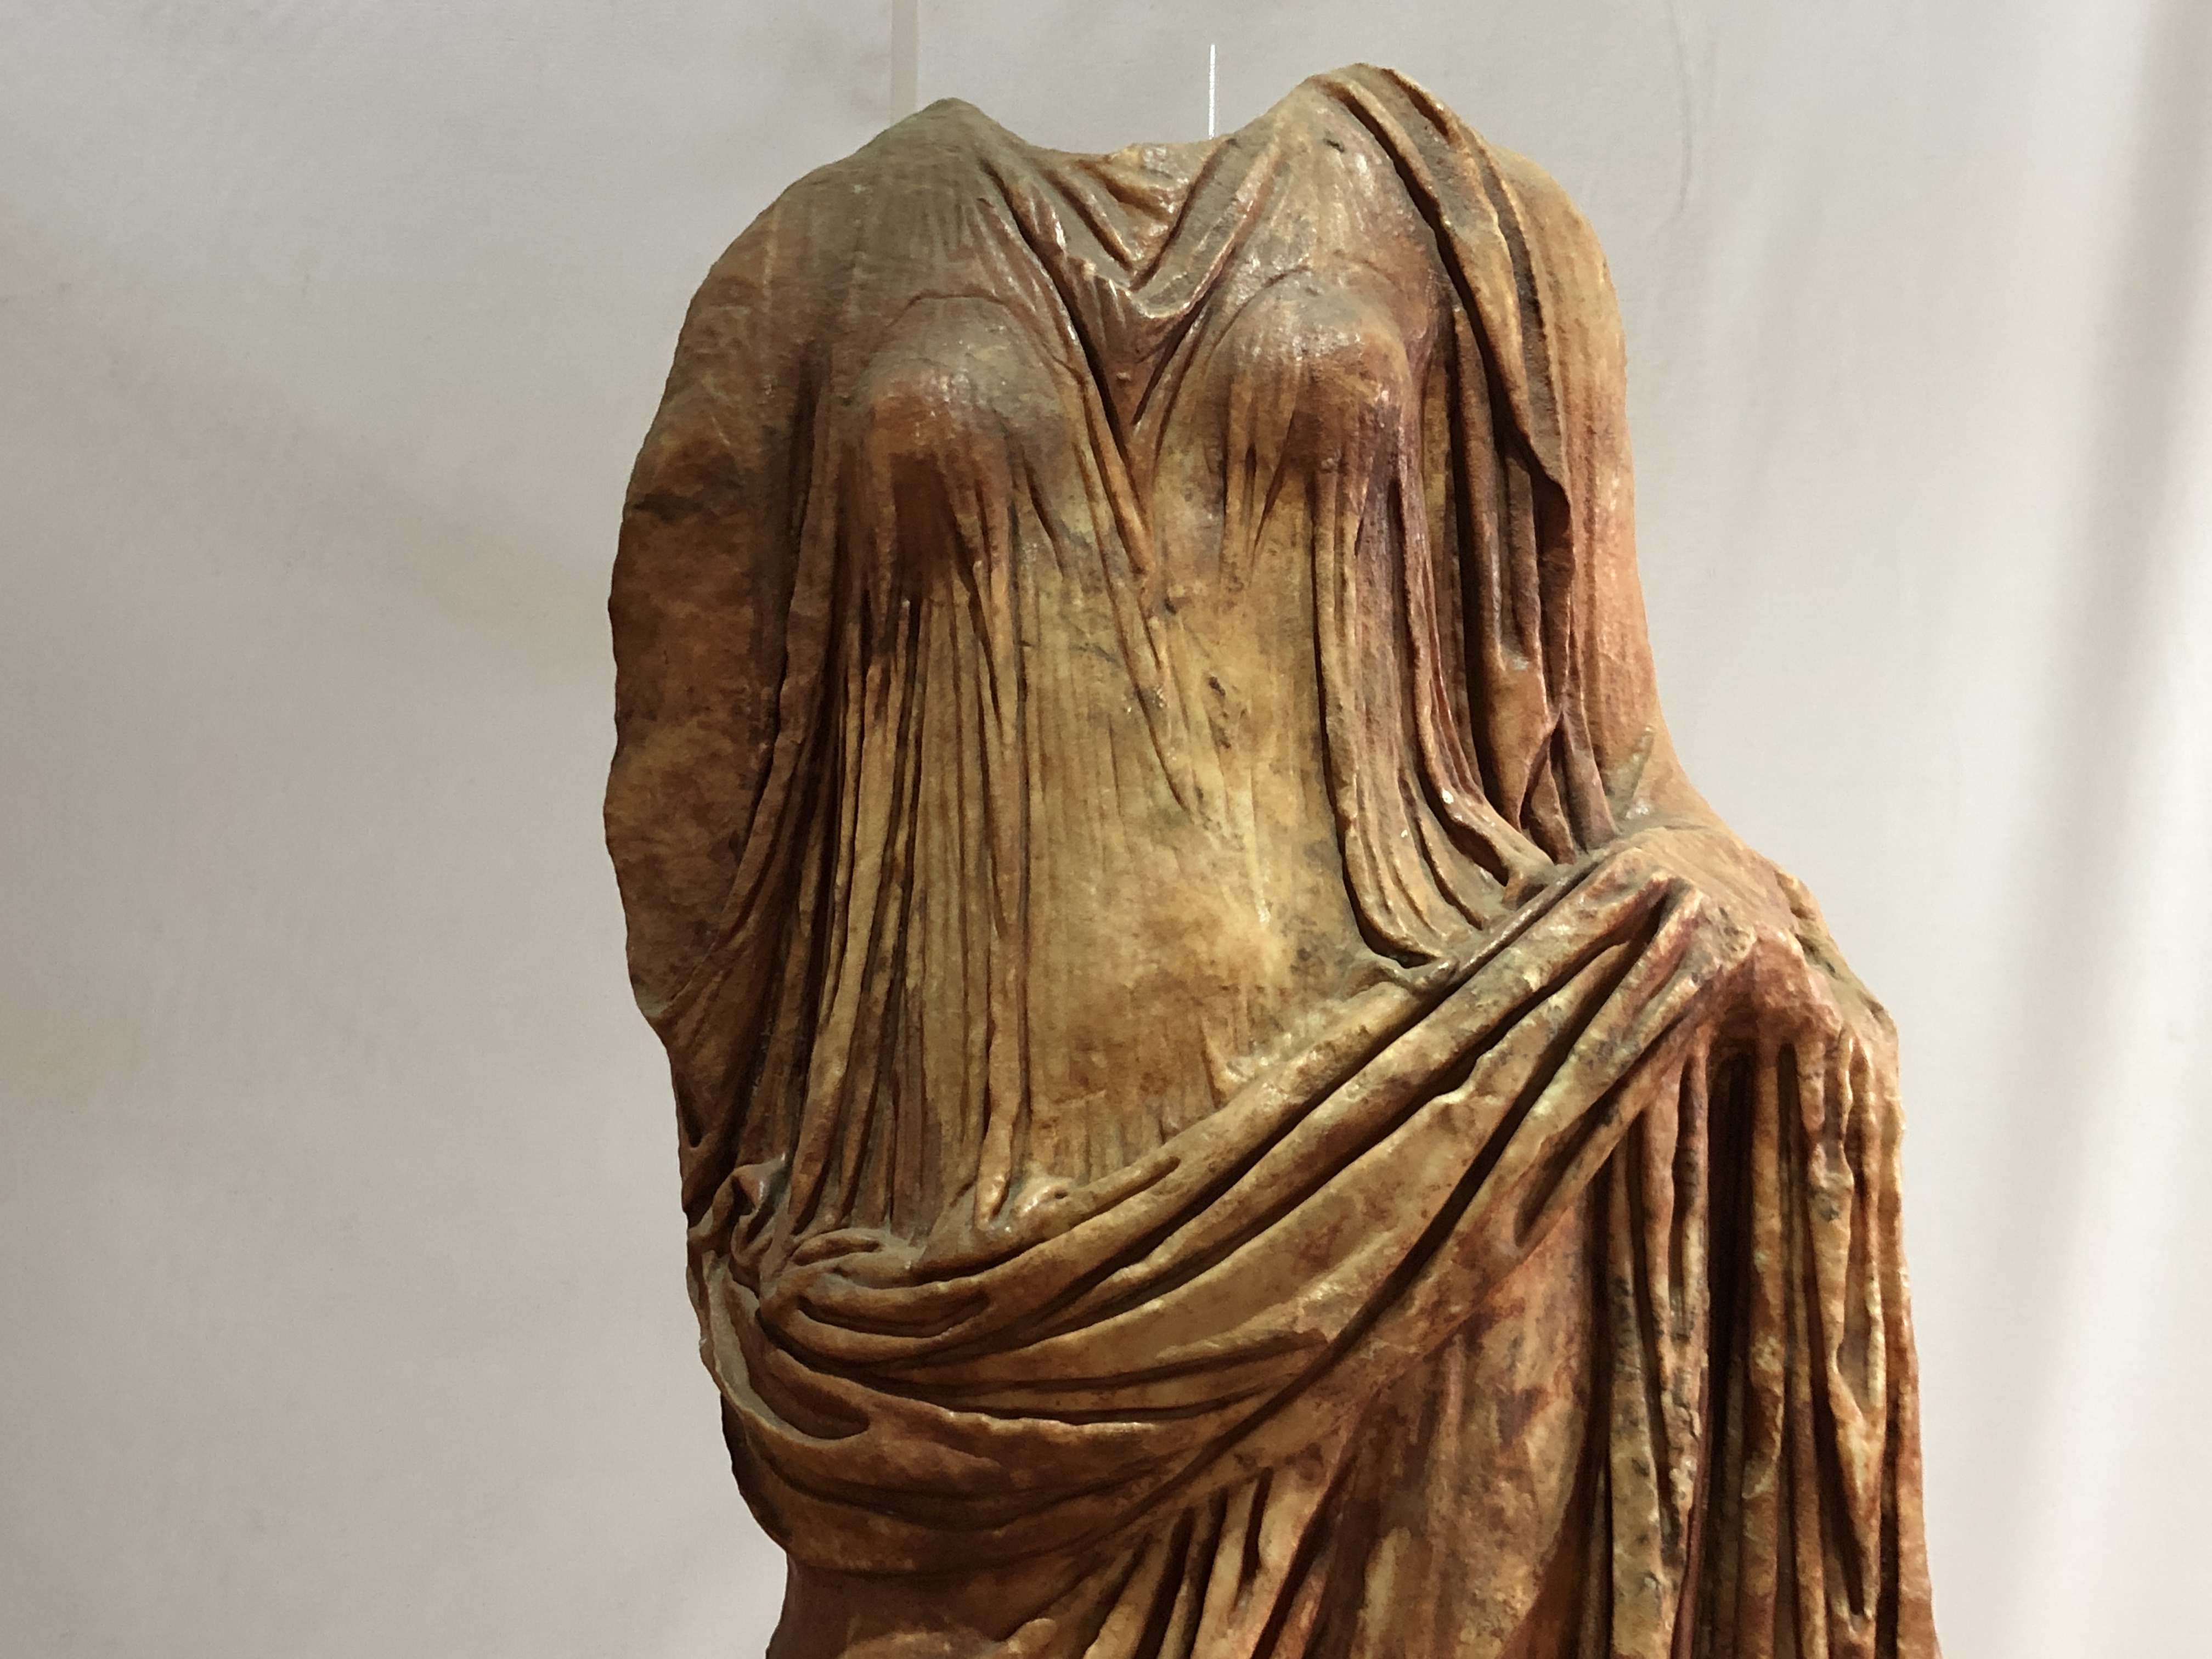 Escultura romana del museo minero de Riotinto